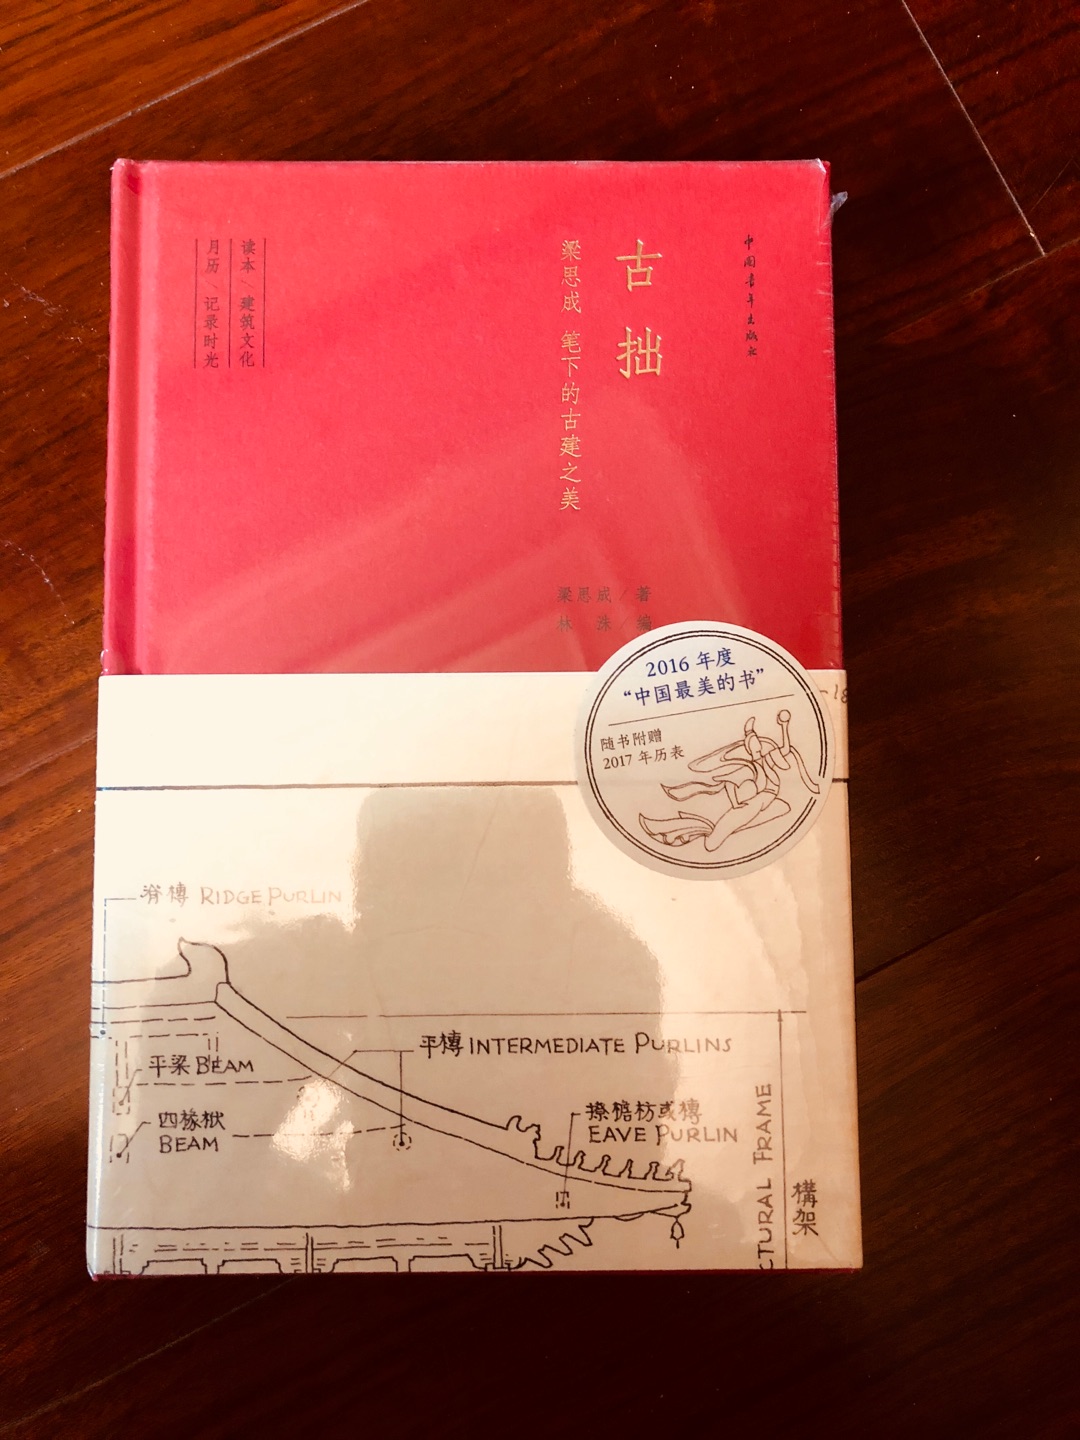 首先京東物流還是很靠譜的，然後這本書是我買過最不靠譜的一本書，嚴格意義上說，這不是一本書，是一本筆記本，配了一些插圖，性價比很低